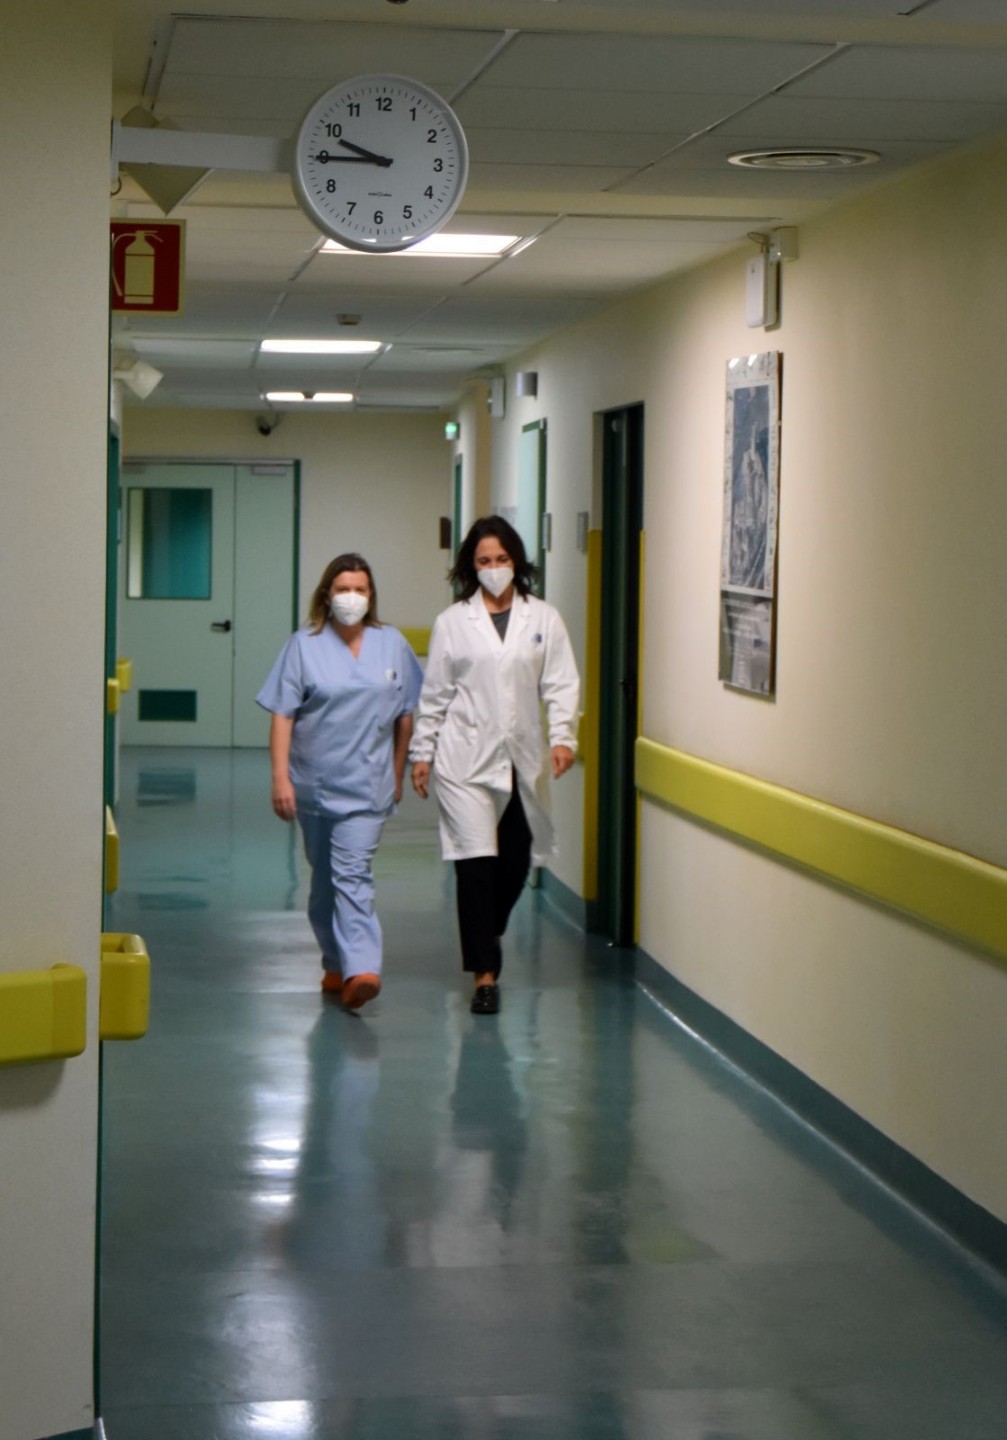 San Donato: 101 letti dedicati ai pazienti Covid  e Giani annuncia che la ristrutturazione dell'ospedale aretino è tra le 5 priorità della sanità toscana